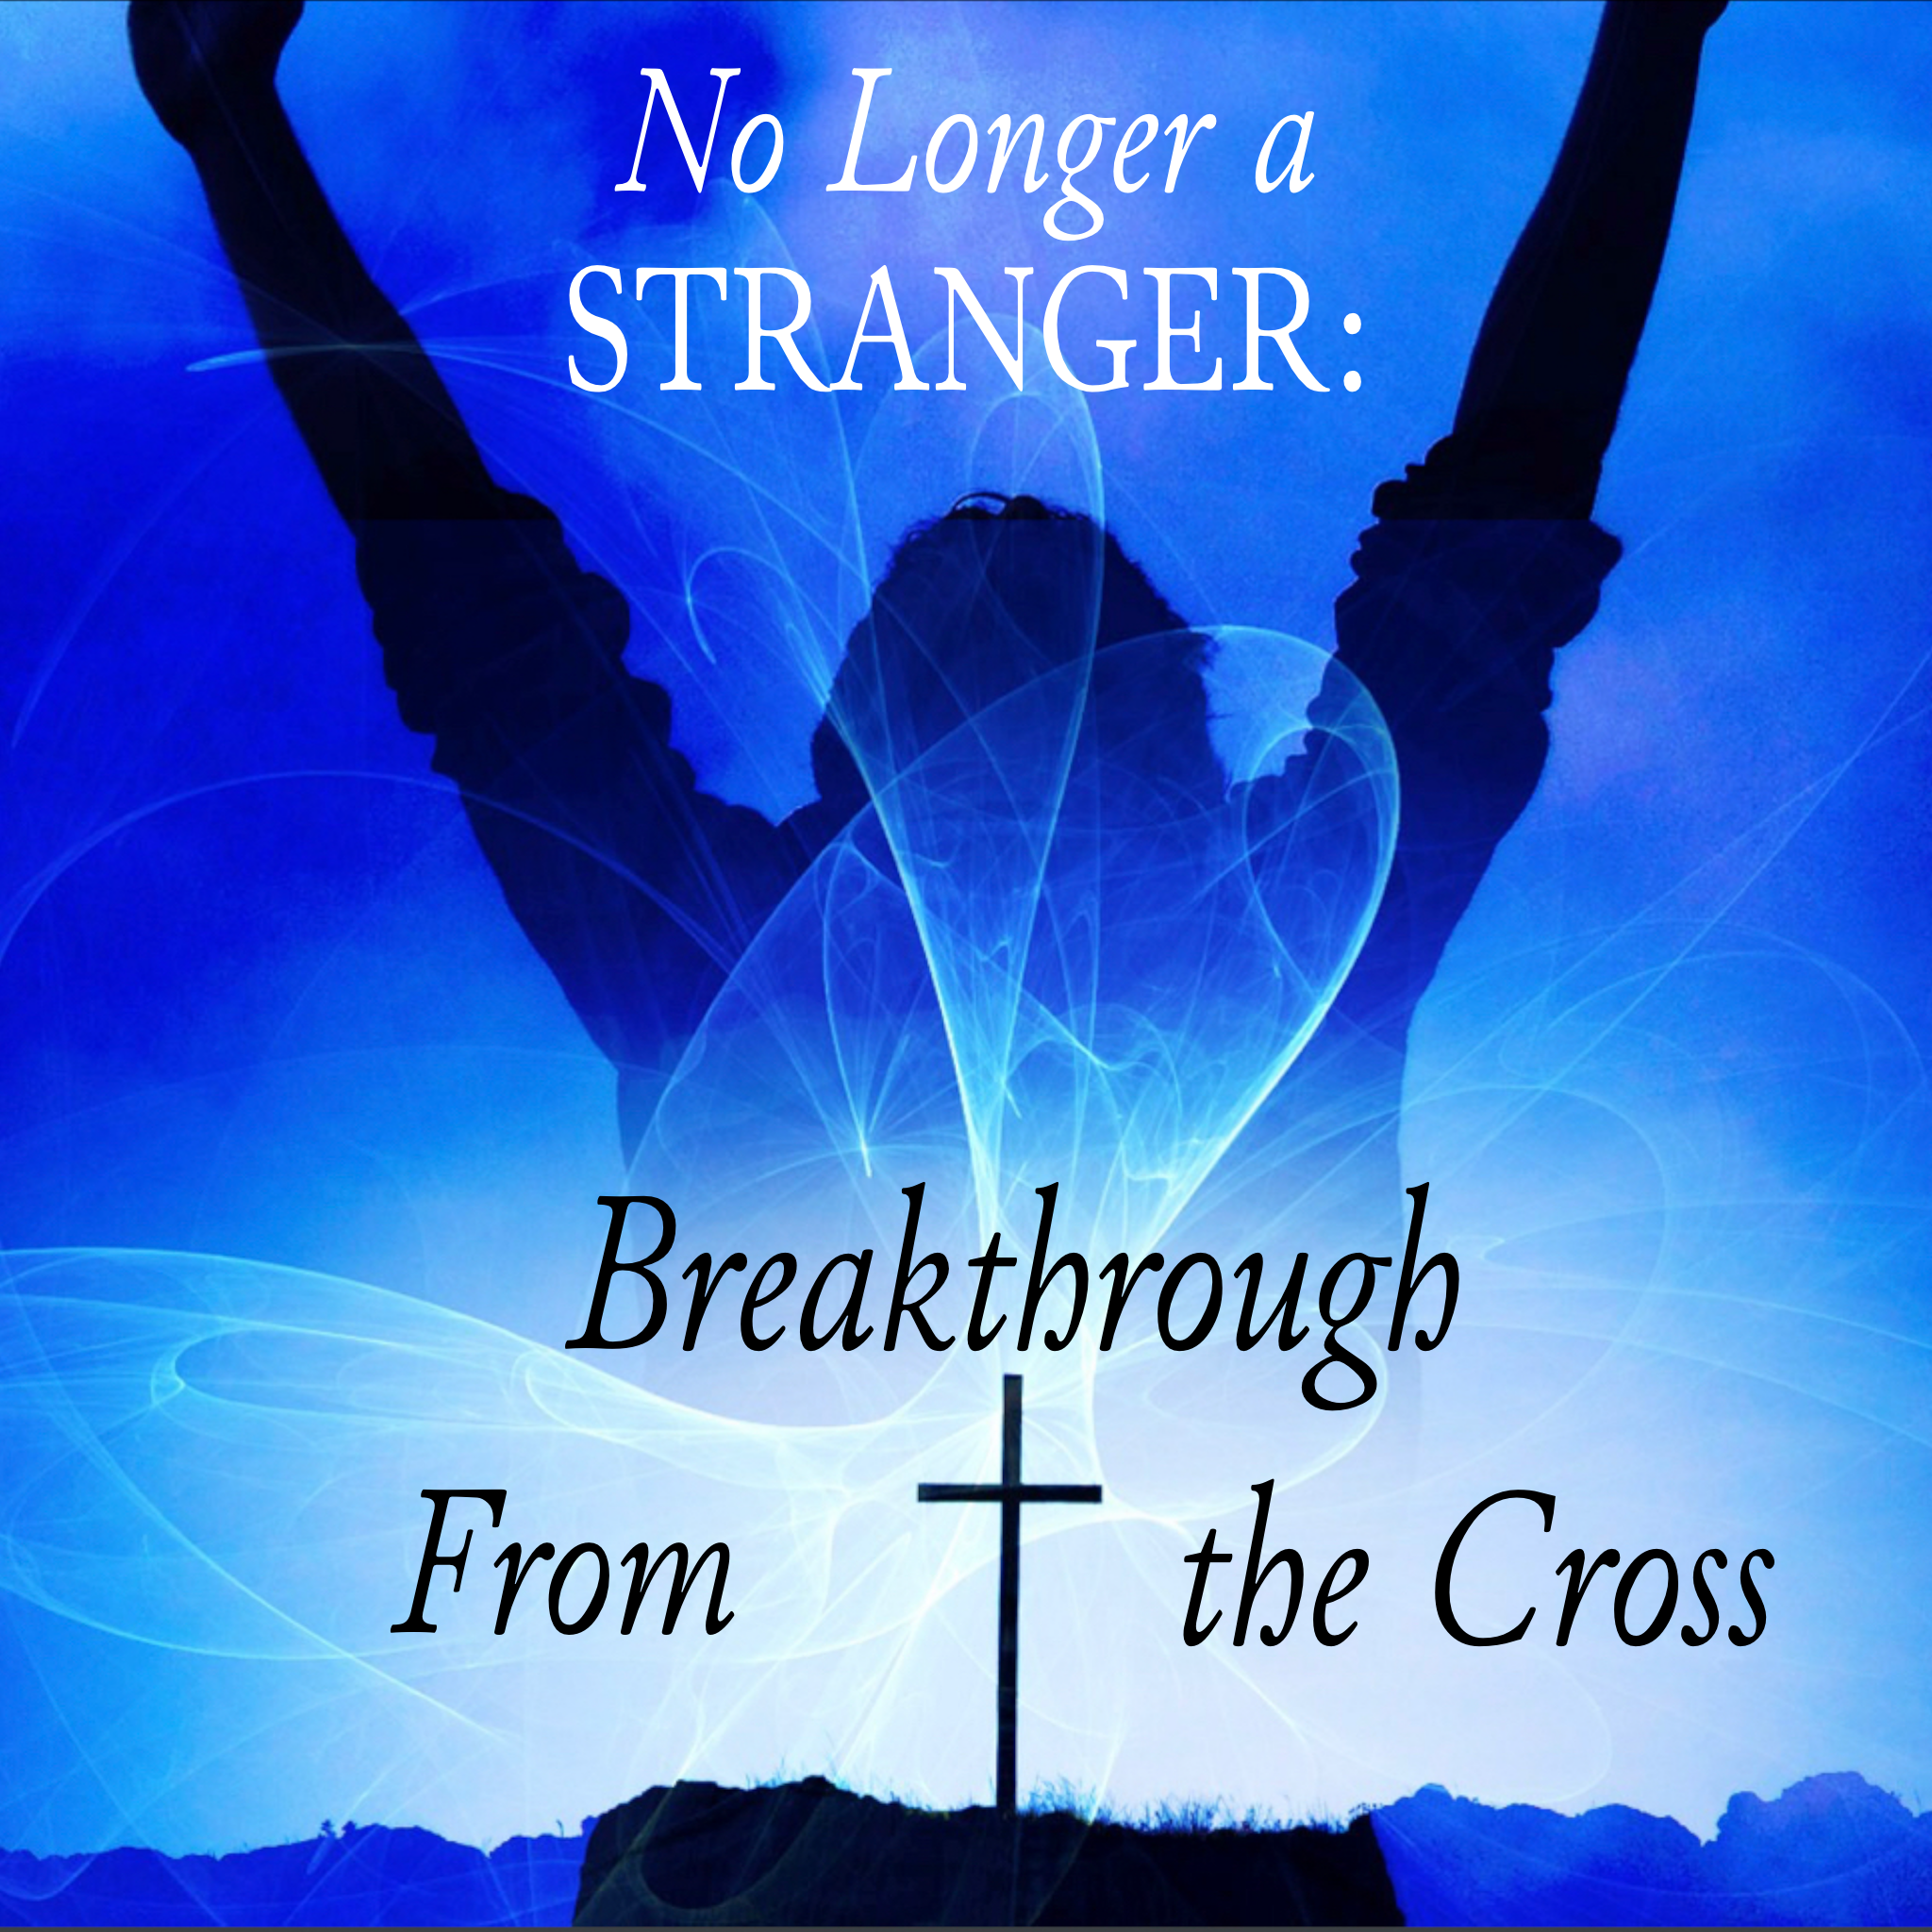 No Longer a Stranger: Breakthrough From the Cross - 9/11/22